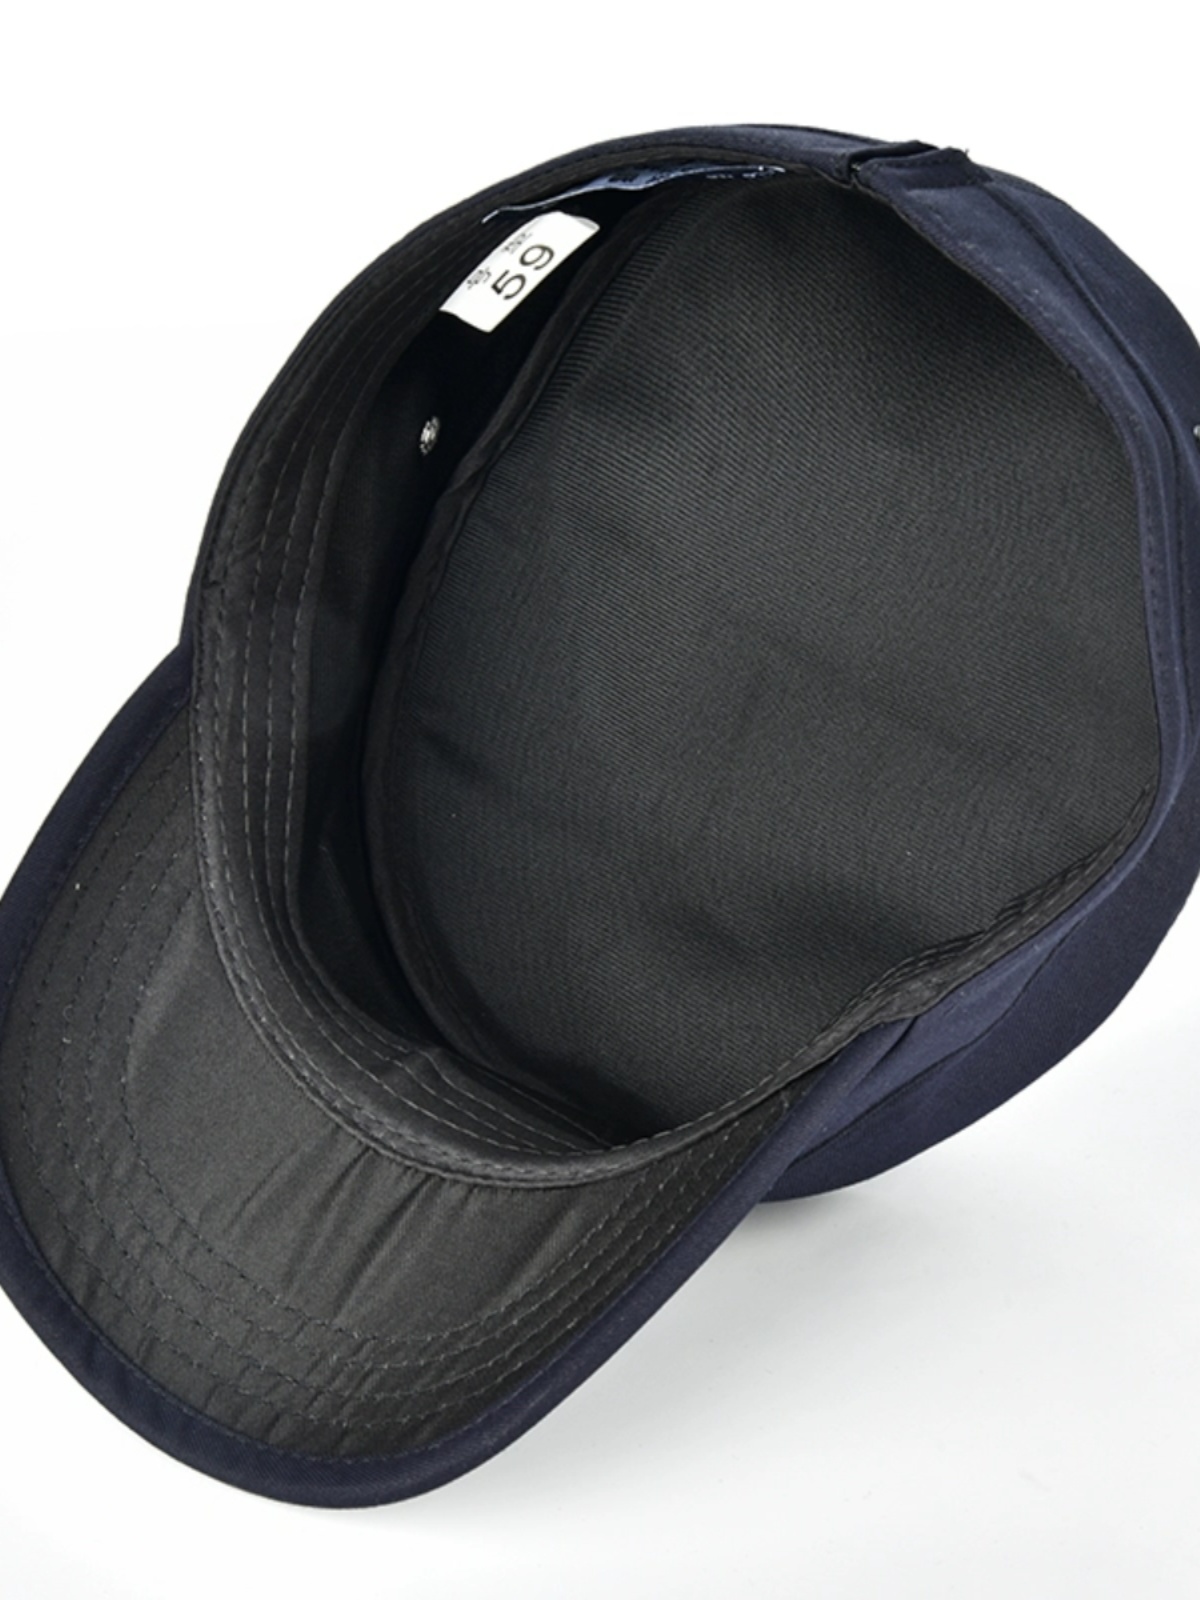 新款作训帽硬顶深藏青黑色斜纹格子布网户外防晒保安执勤平顶便帽 - 图2